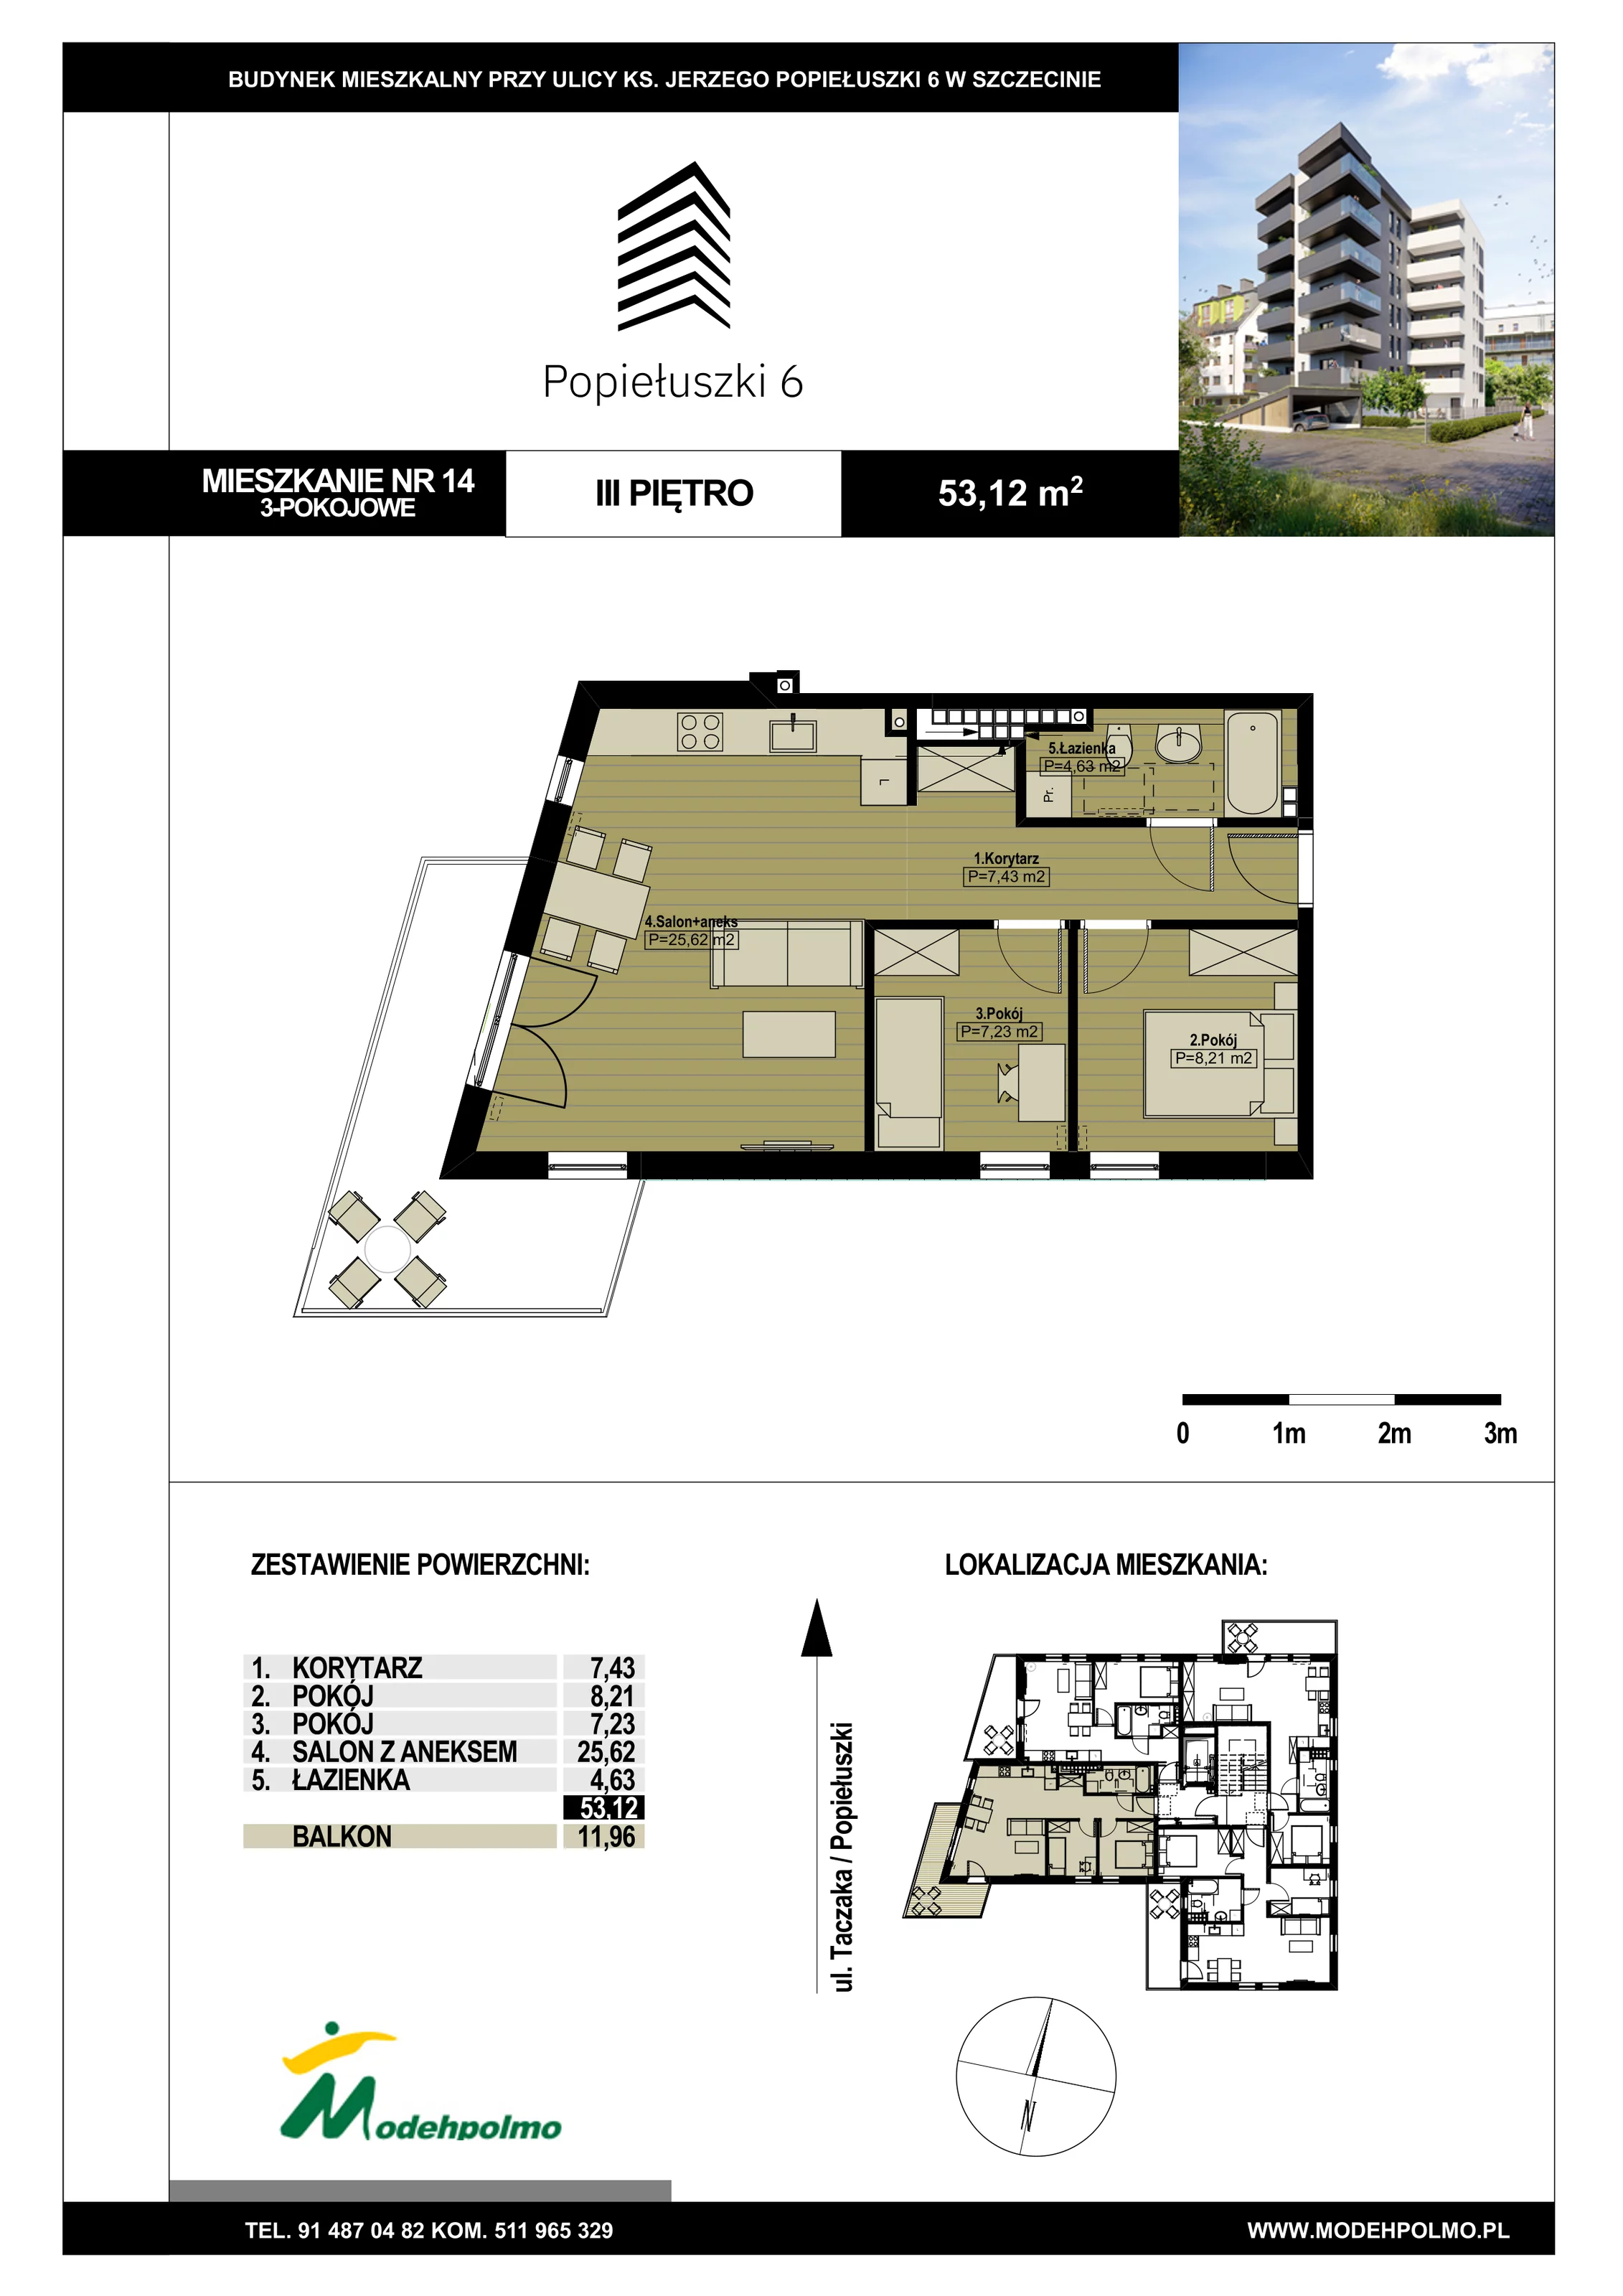 Mieszkanie 53,12 m², piętro 3, oferta nr 14, Popiełuszki, Szczecin, Zachód, Pogodno, ul. Popiełuszki 6